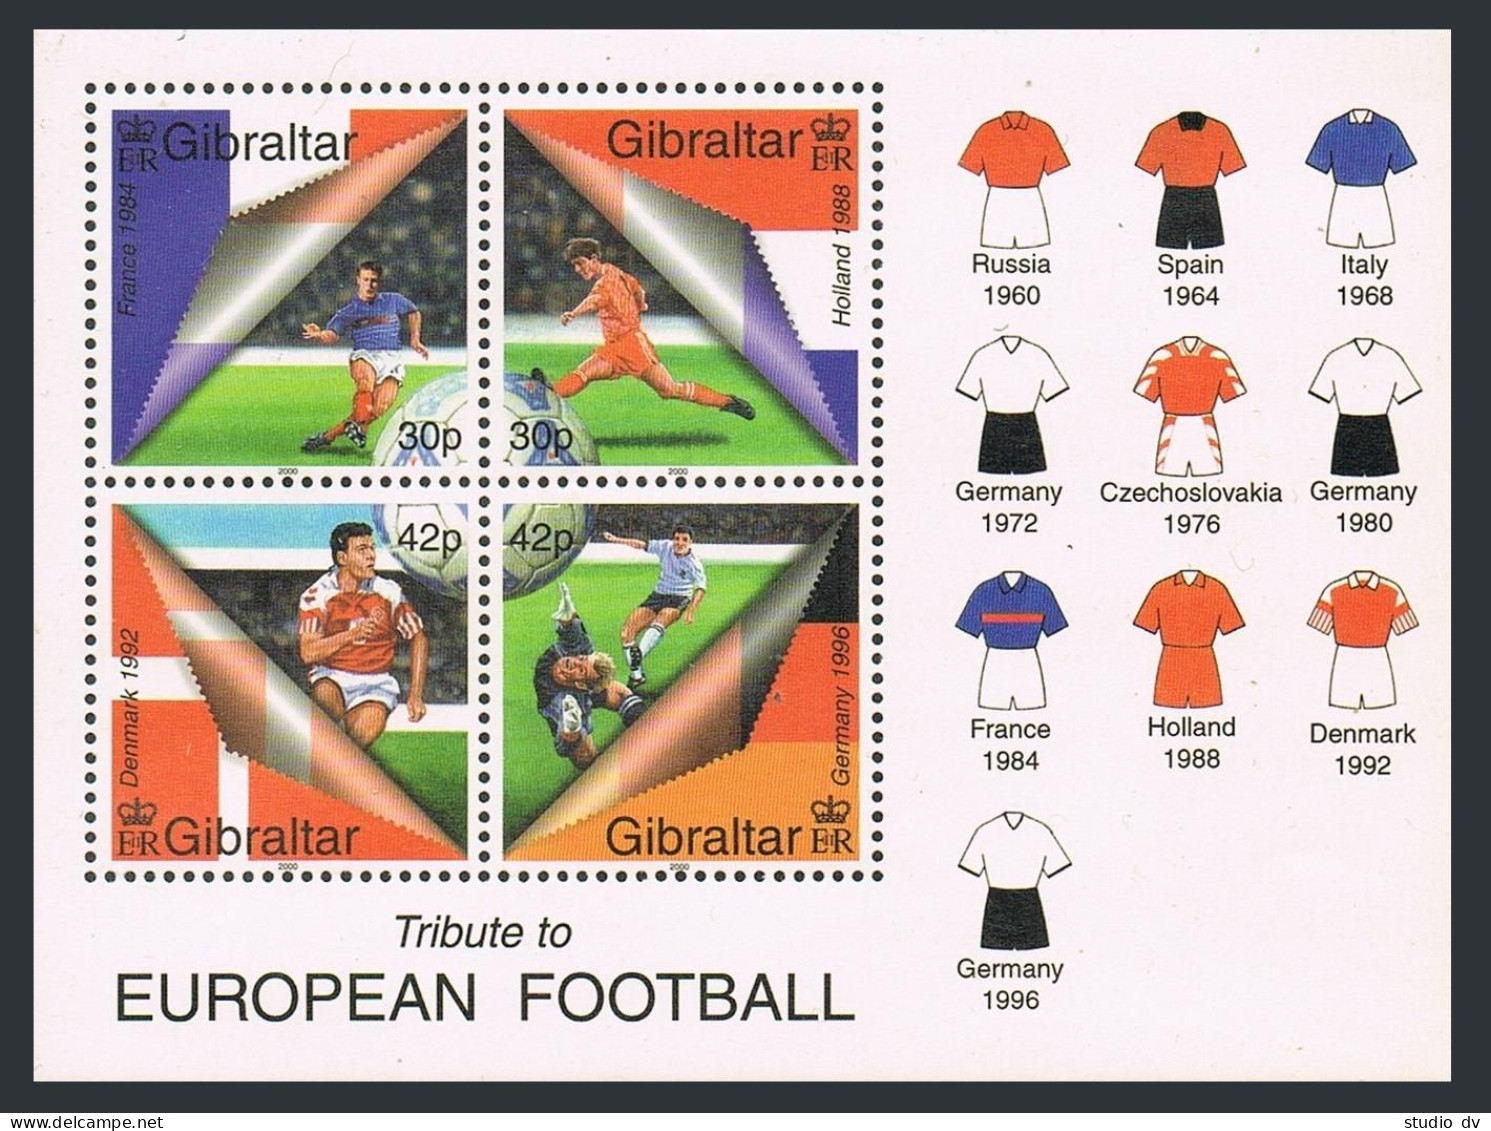 Gibraltar 835a Sheet,MNH. European Soccer,2000.Teams. - Gibraltar